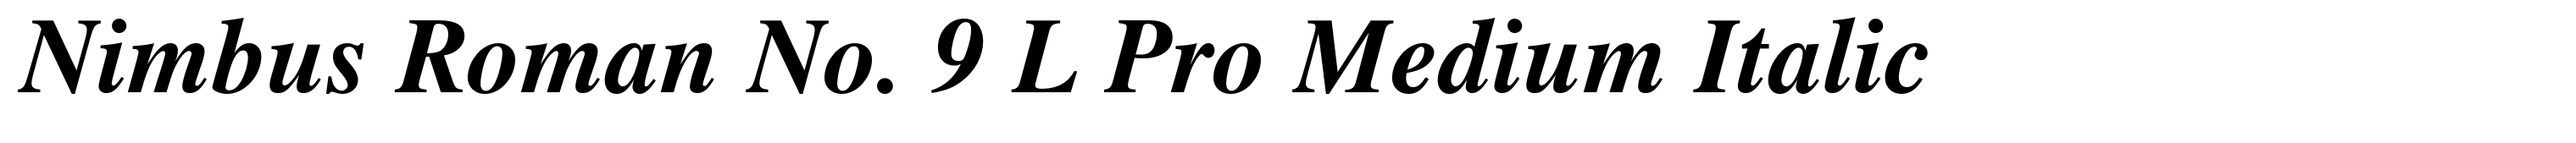 Nimbus Roman No. 9 L Pro Medium Italic